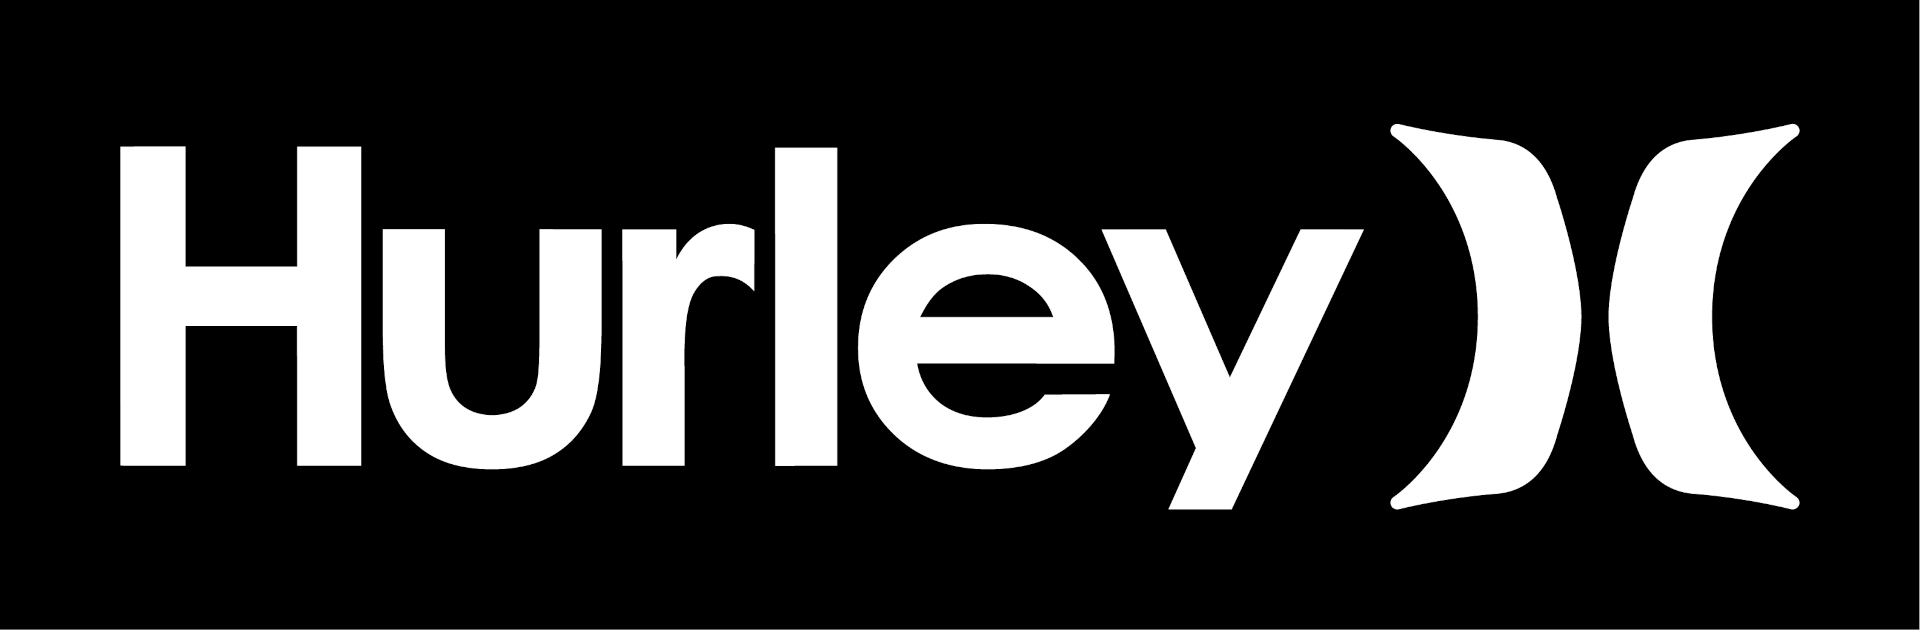 hurley : notre partenaire exclusif